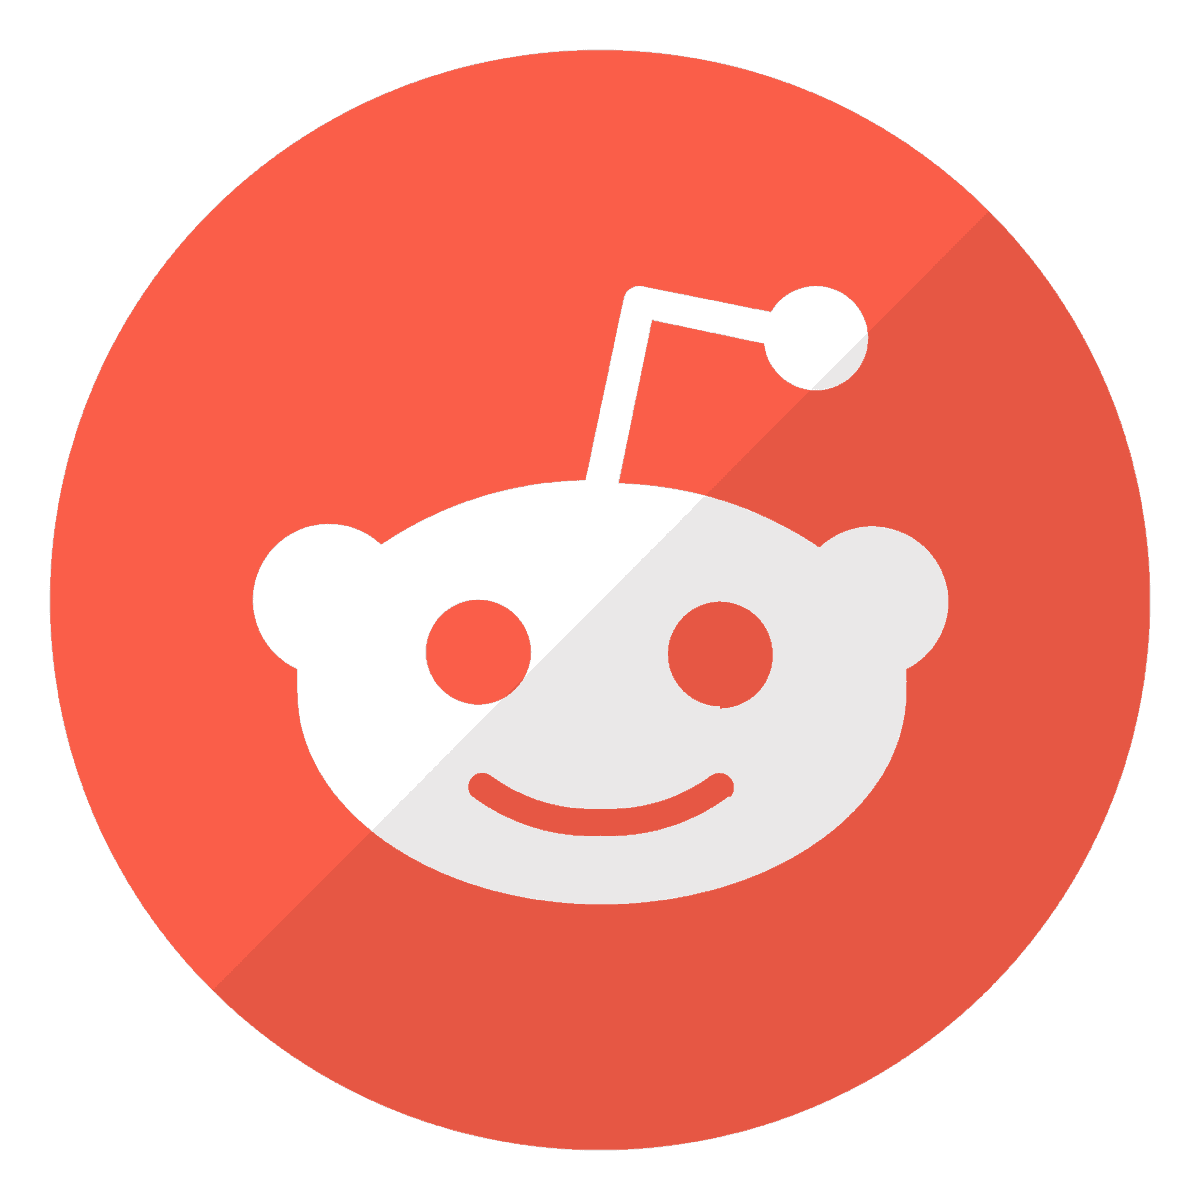 Das BIld zeigt das Logo von Reddit